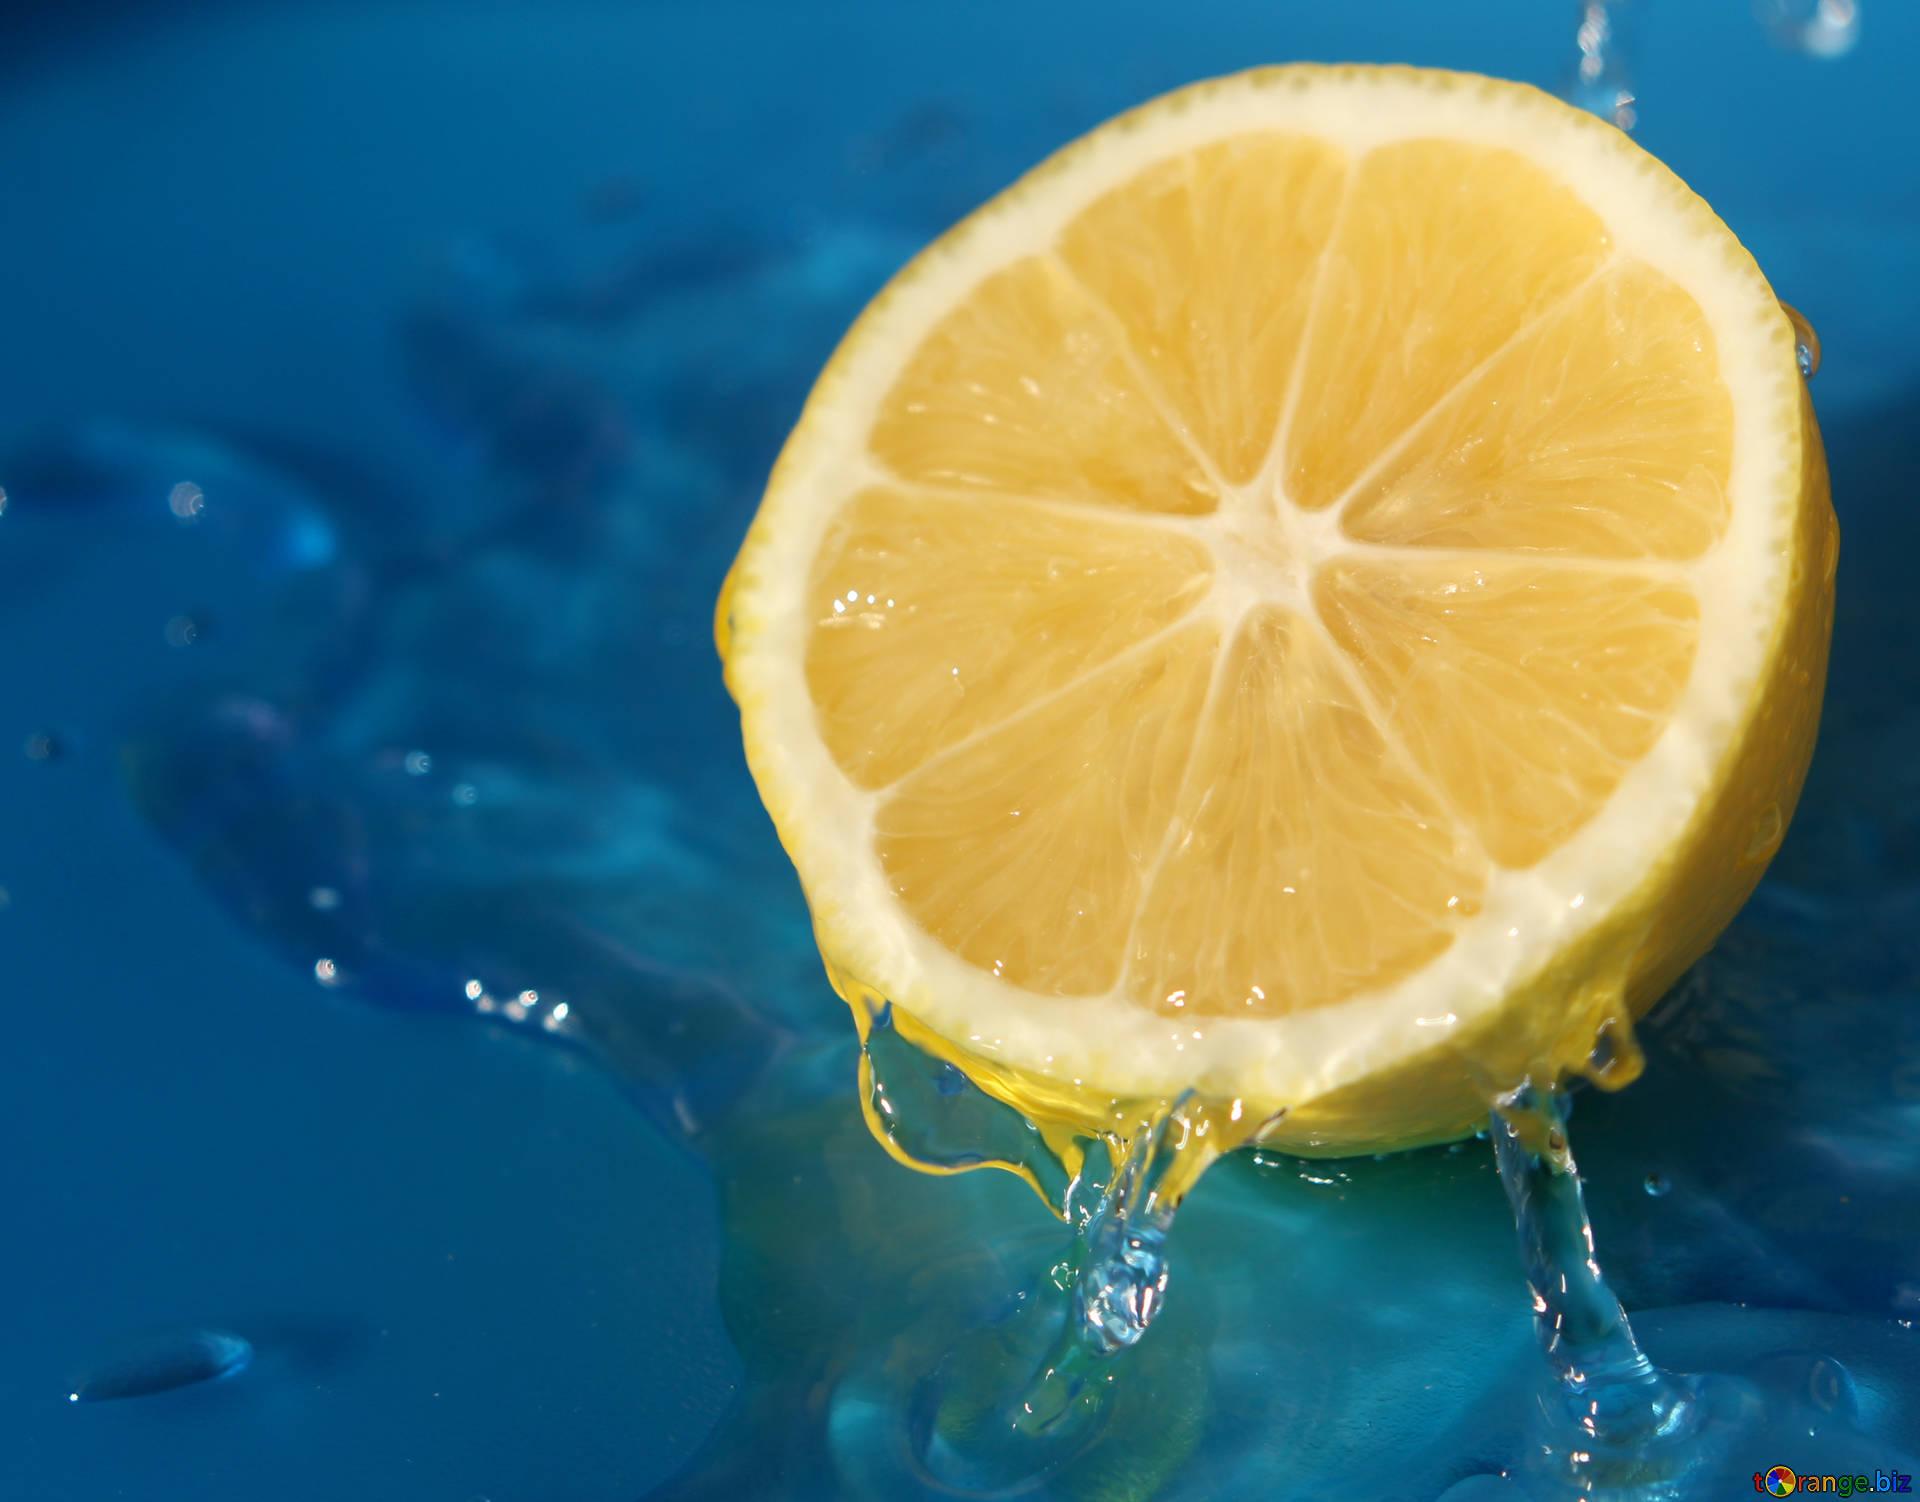 Lemons in water lemon with water drops citrus № 40765